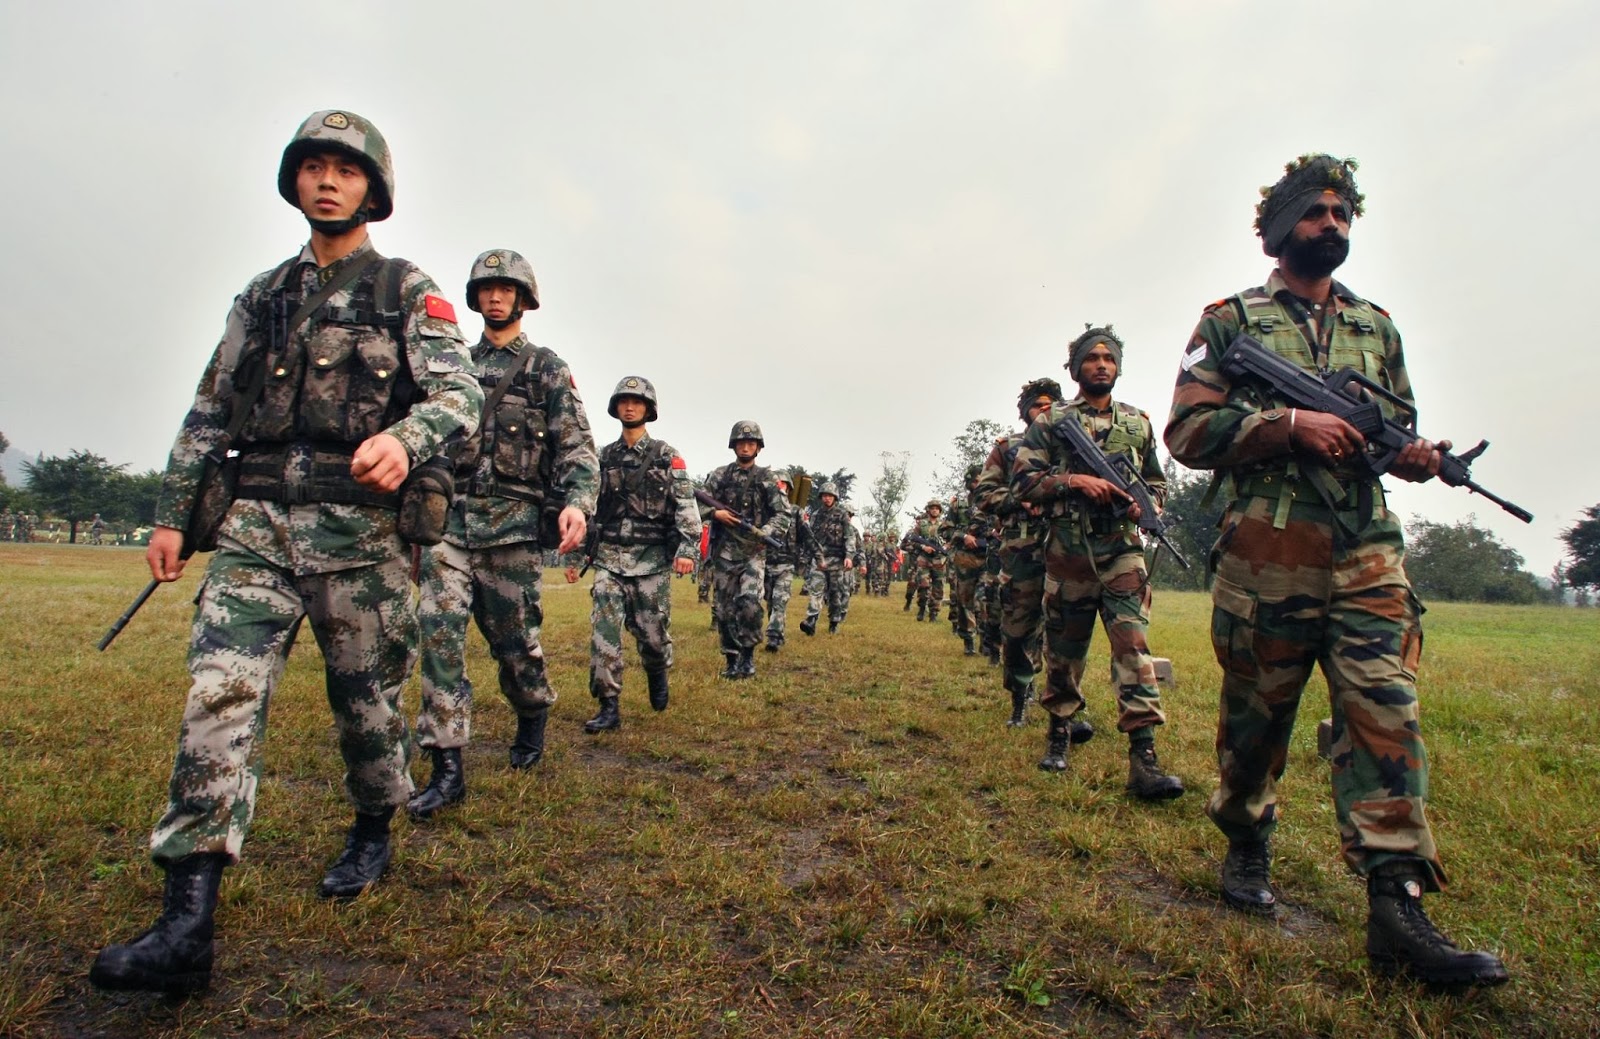 Border area. Армия Китая и Индии. Армия КНР на границе Индии. Китайский солдат. Индийские войска против китайских.